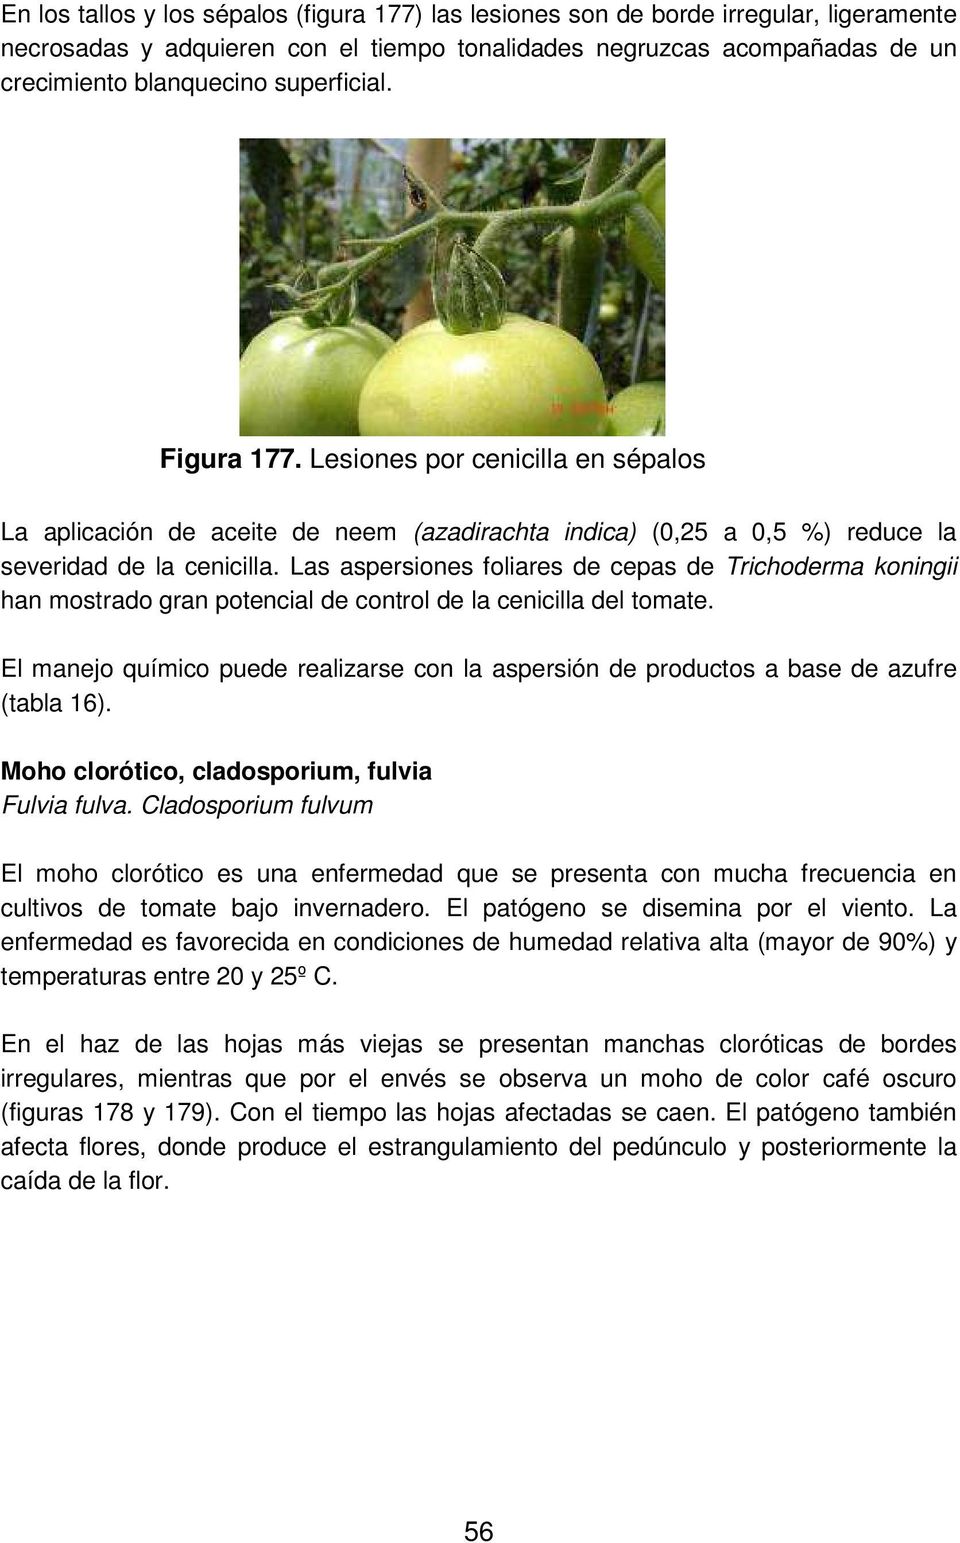 Las aspersiones foliares de cepas de Trichoderma koningii han mostrado gran potencial de control de la cenicilla del tomate.